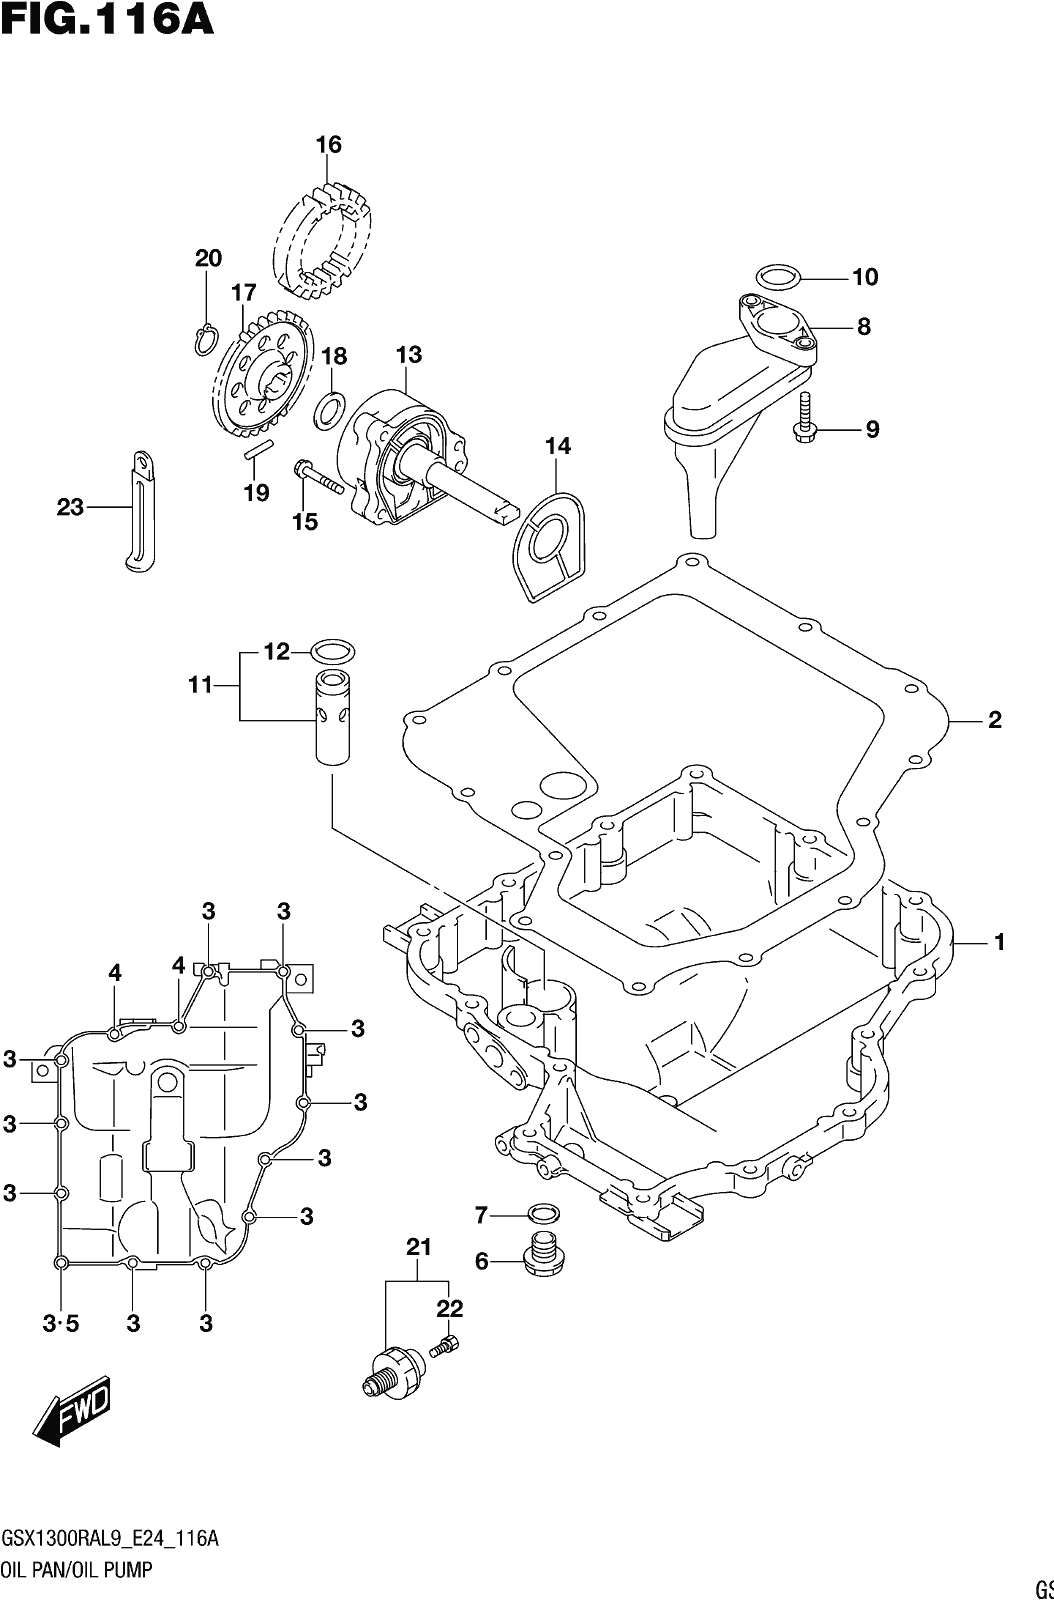 Fig.116a Oil Pan/oil Pump